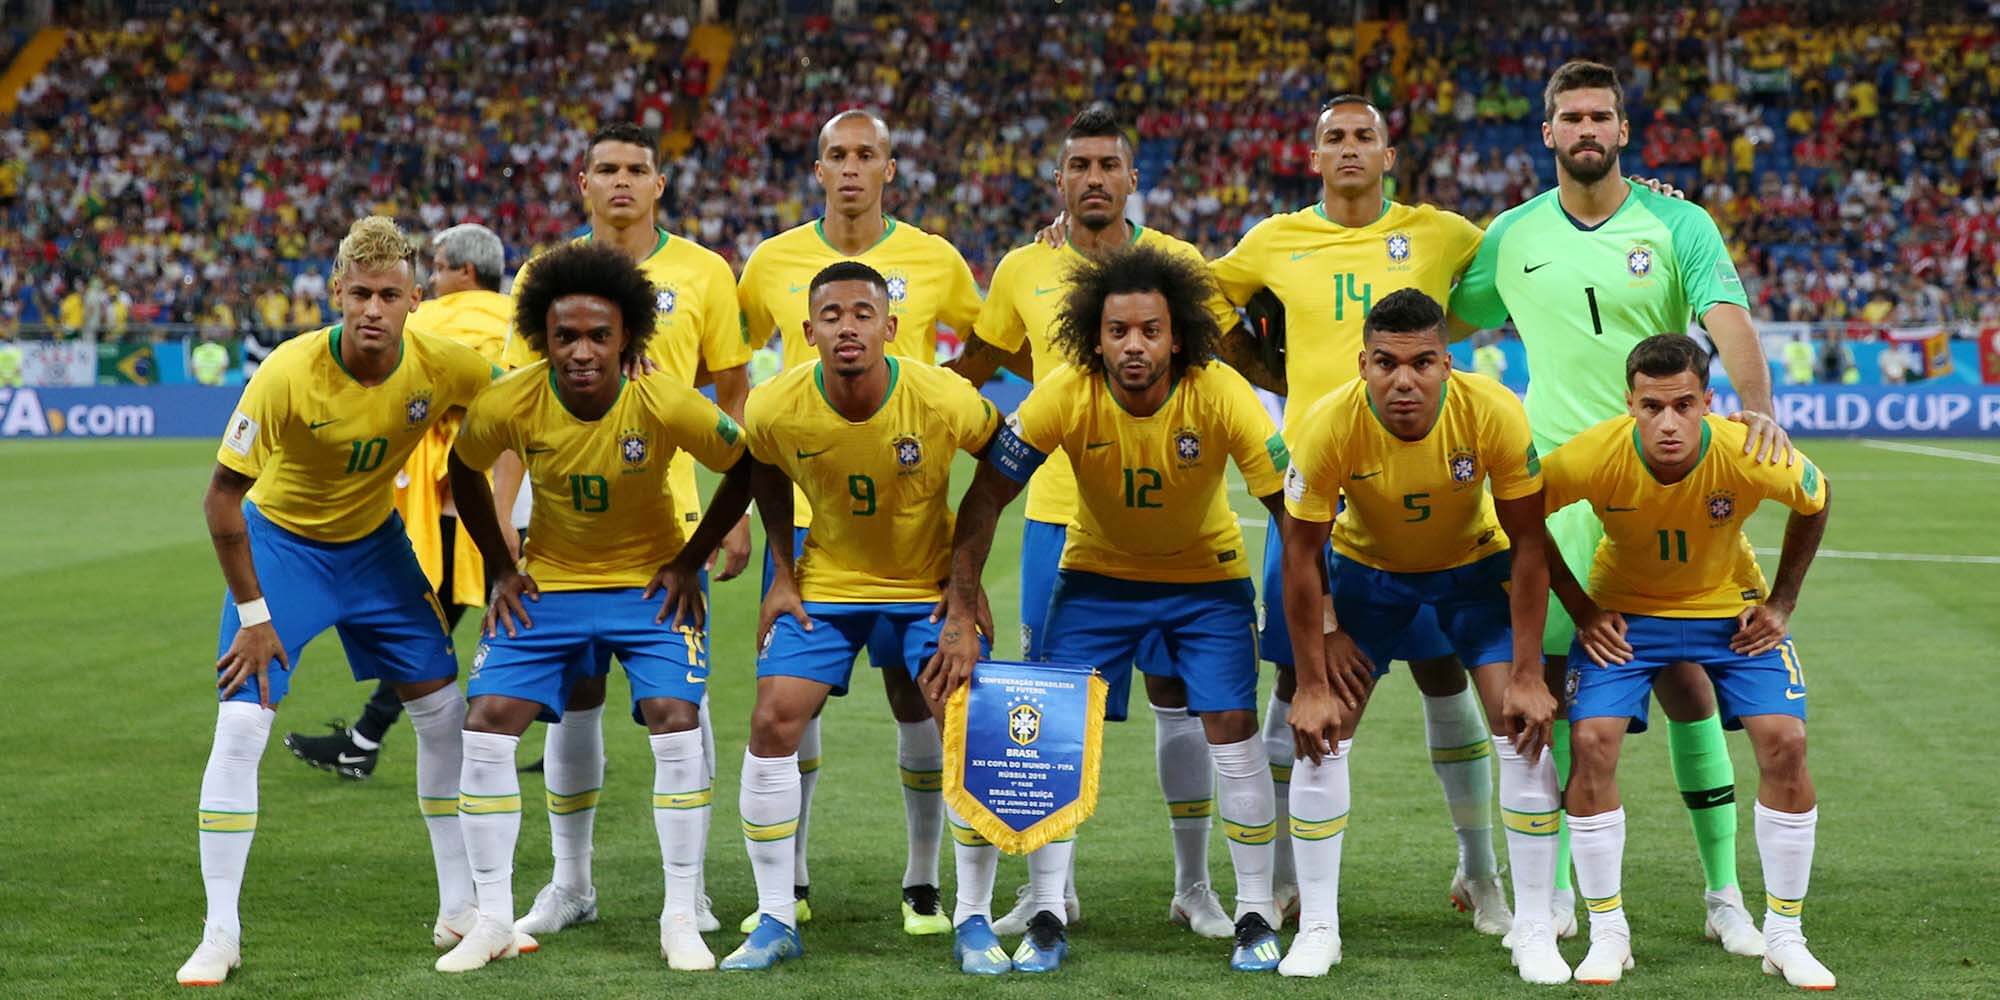 Em campo: os cortes dos jogadores de futebol da Seleção Brasileira